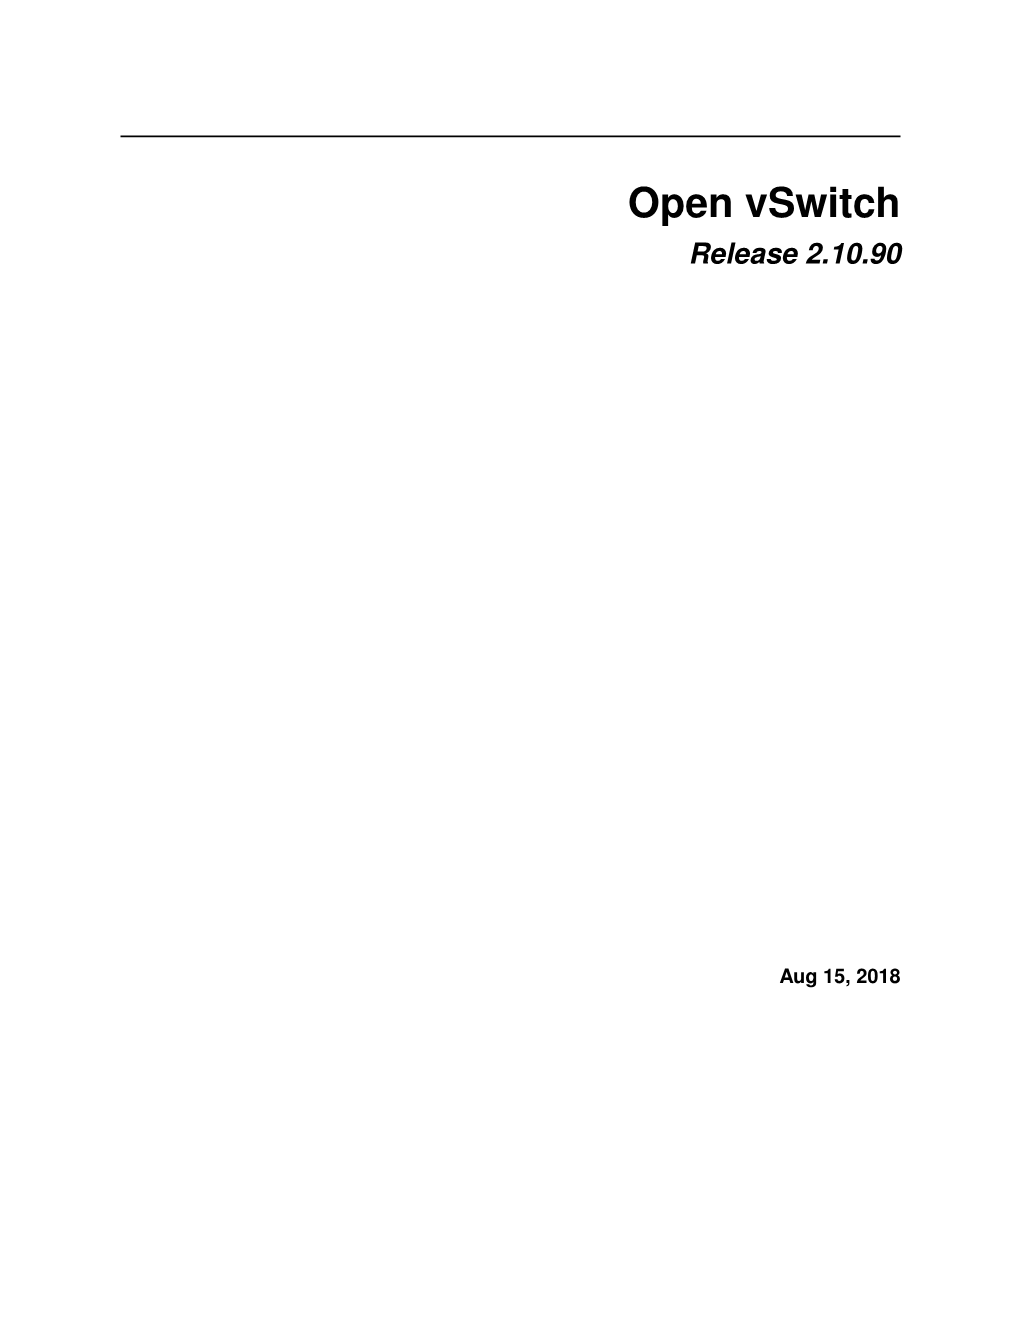 Open Vswitch Release 2.10.90